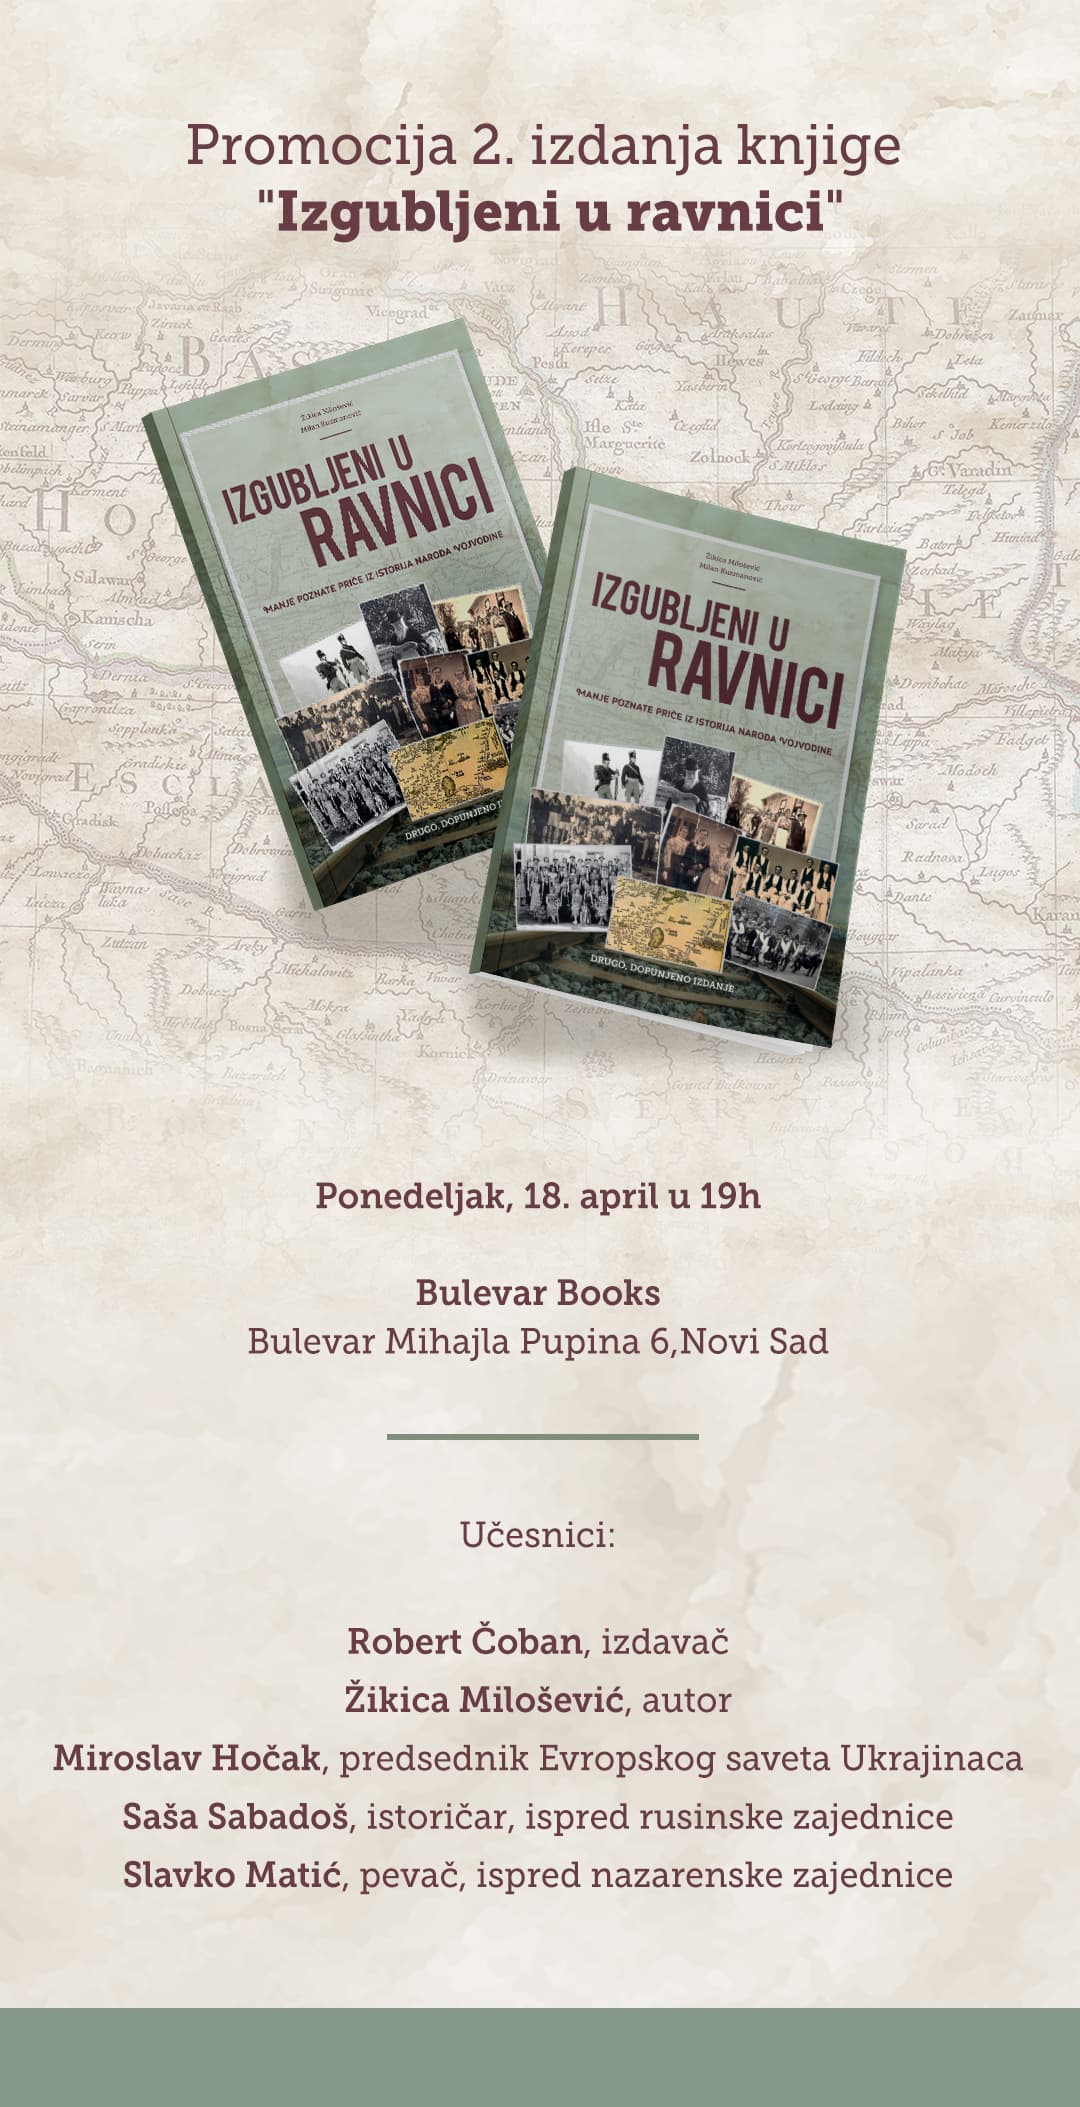 Promocija drugog izdanja knjige “Izgubljeni u ravnici“, 18. aprila u Novom Sadu.